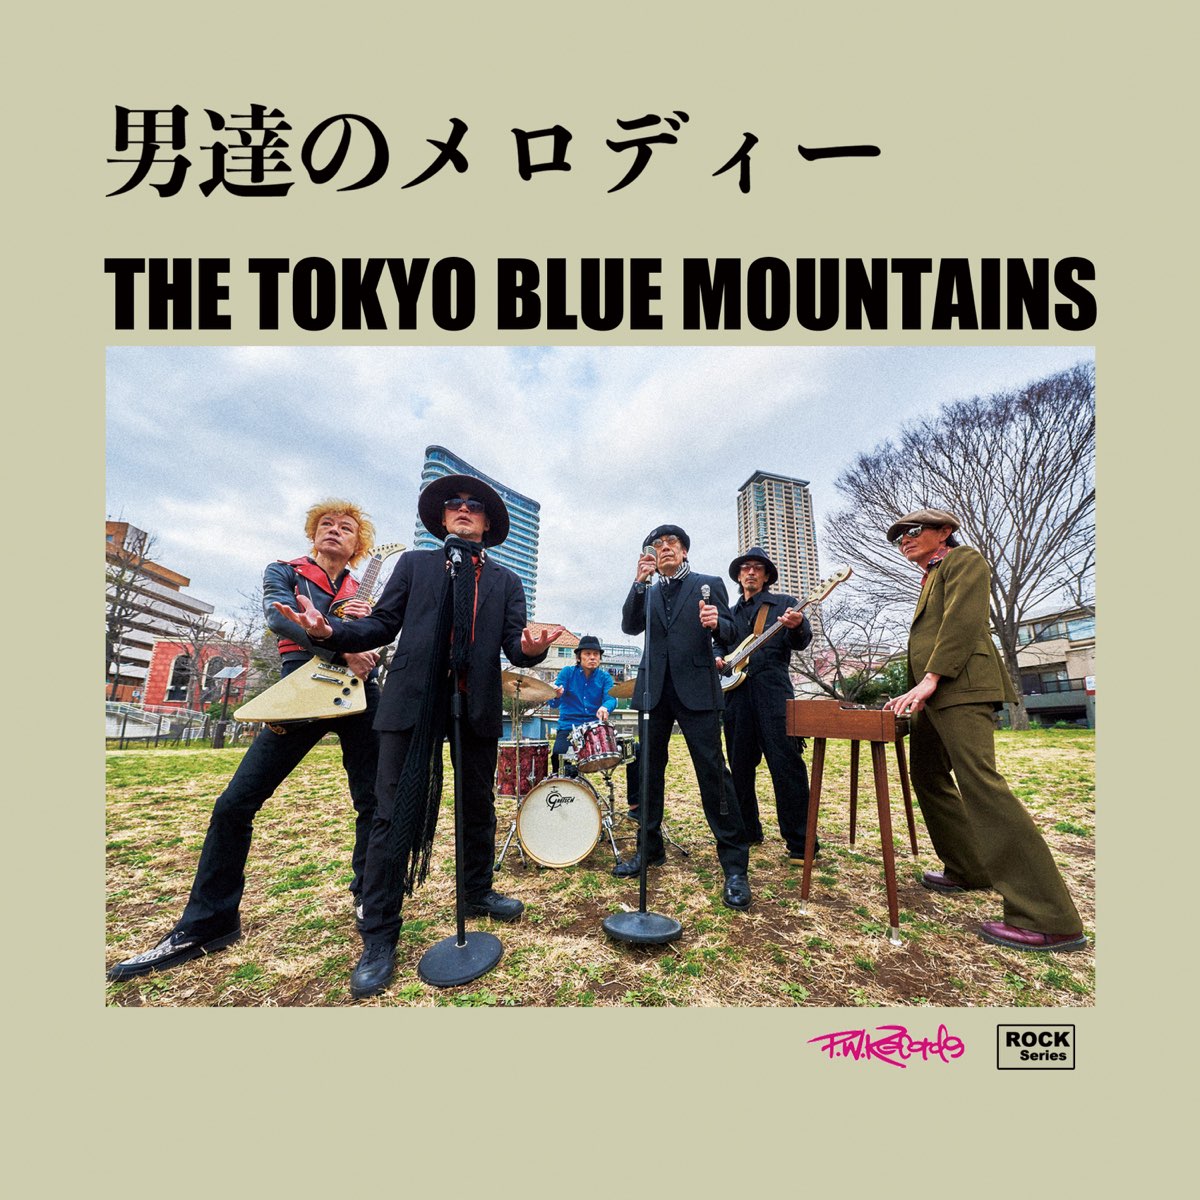 Tokyo blues